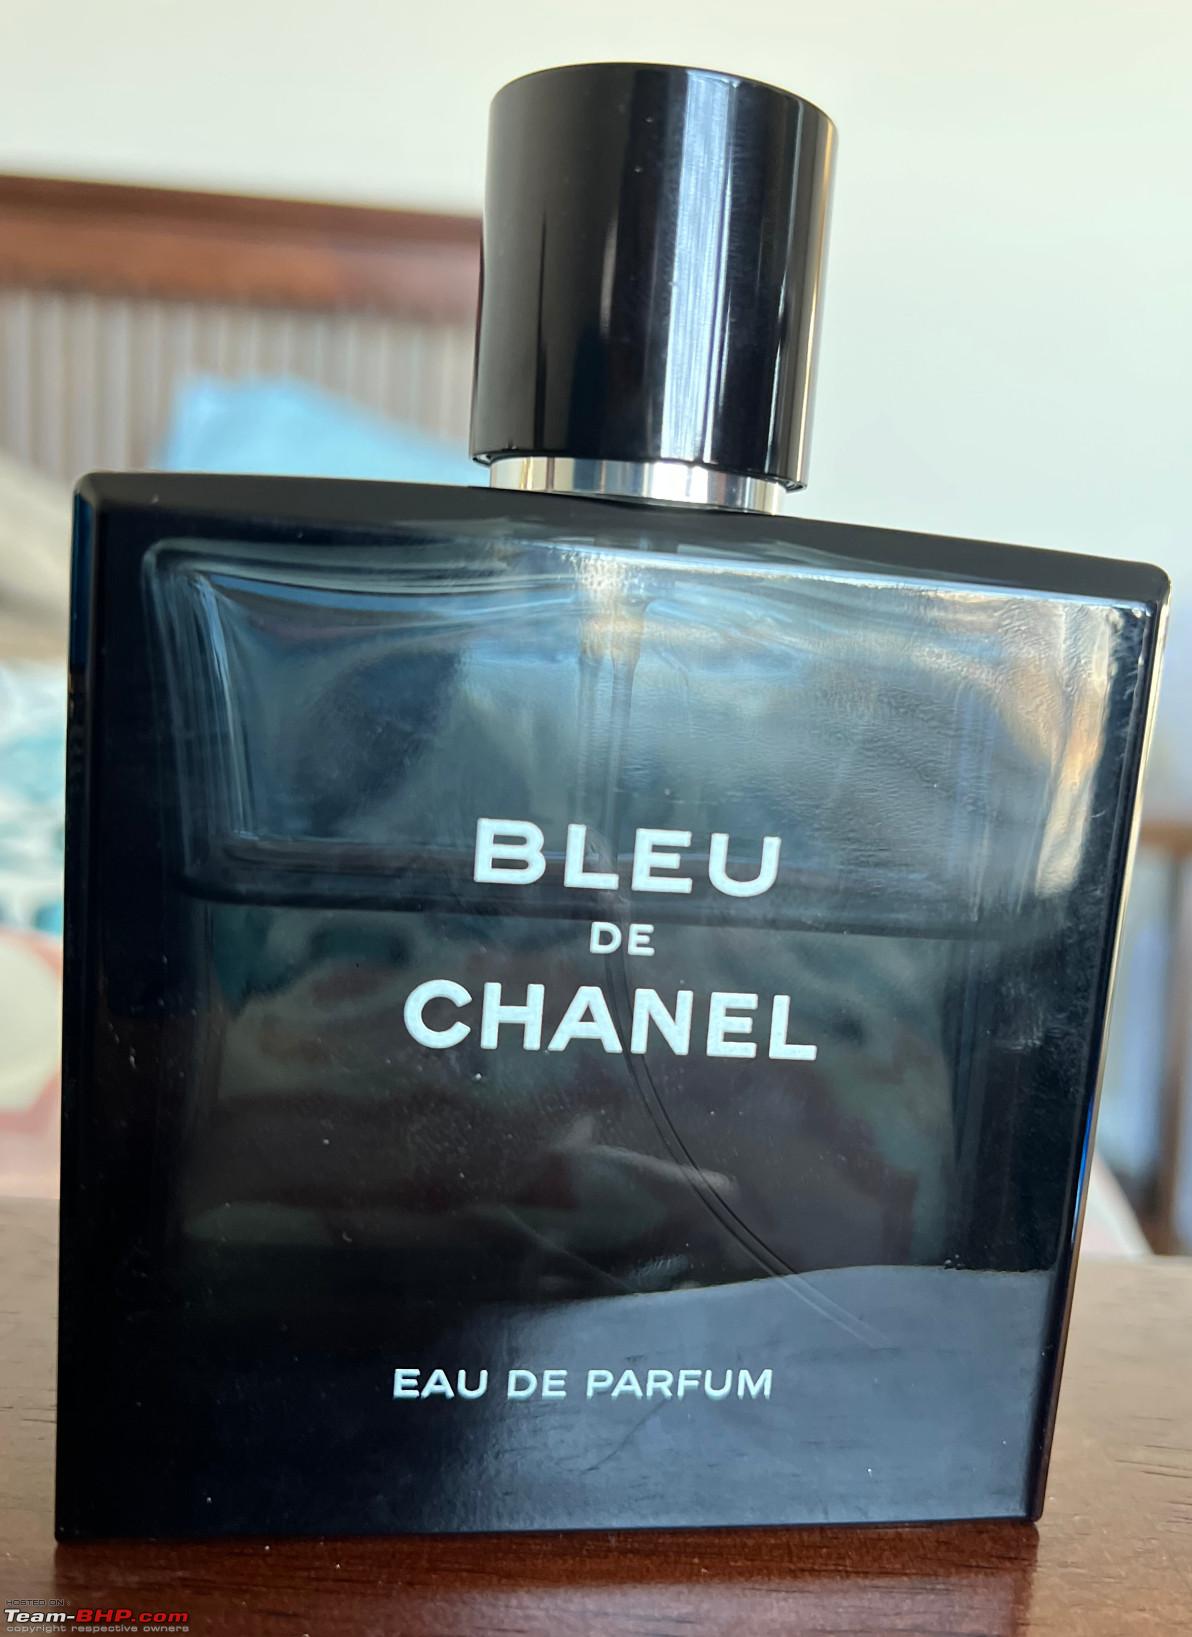 Chanel Bleu de Chanel Parfum Cologne Decant Sample – perfUUm